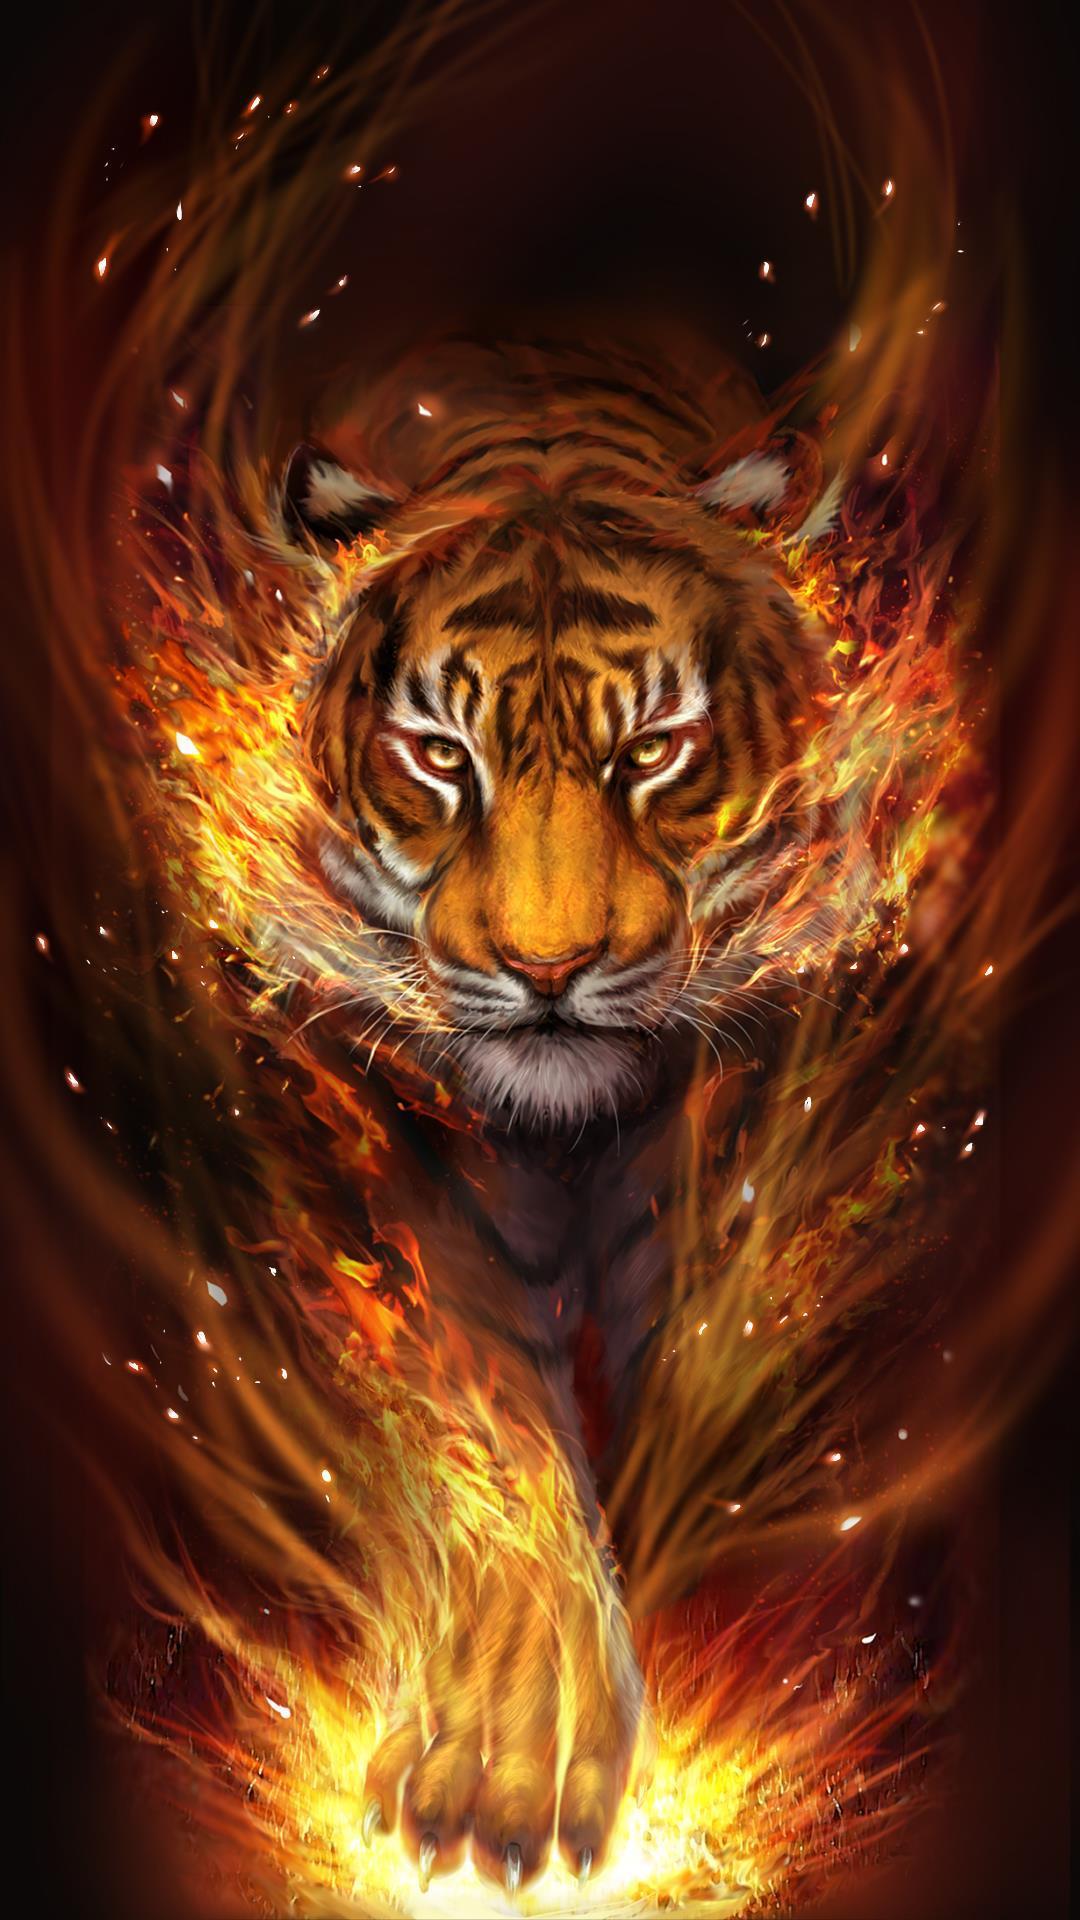 Với hình nền ngọn lửa hổ sống động, bạn sẽ chứng kiến sự mạnh mẽ và sức mạnh của chúng. Những ngọn lửa bùng lên từ đuôi hổ sẽ truyền tải cảm giác hồi hộp và đầy tính chất mạo hiểm. Bạn sẽ cảm thấy như đang sống trong một thế giới phiêu lưu và đầy kích thích.